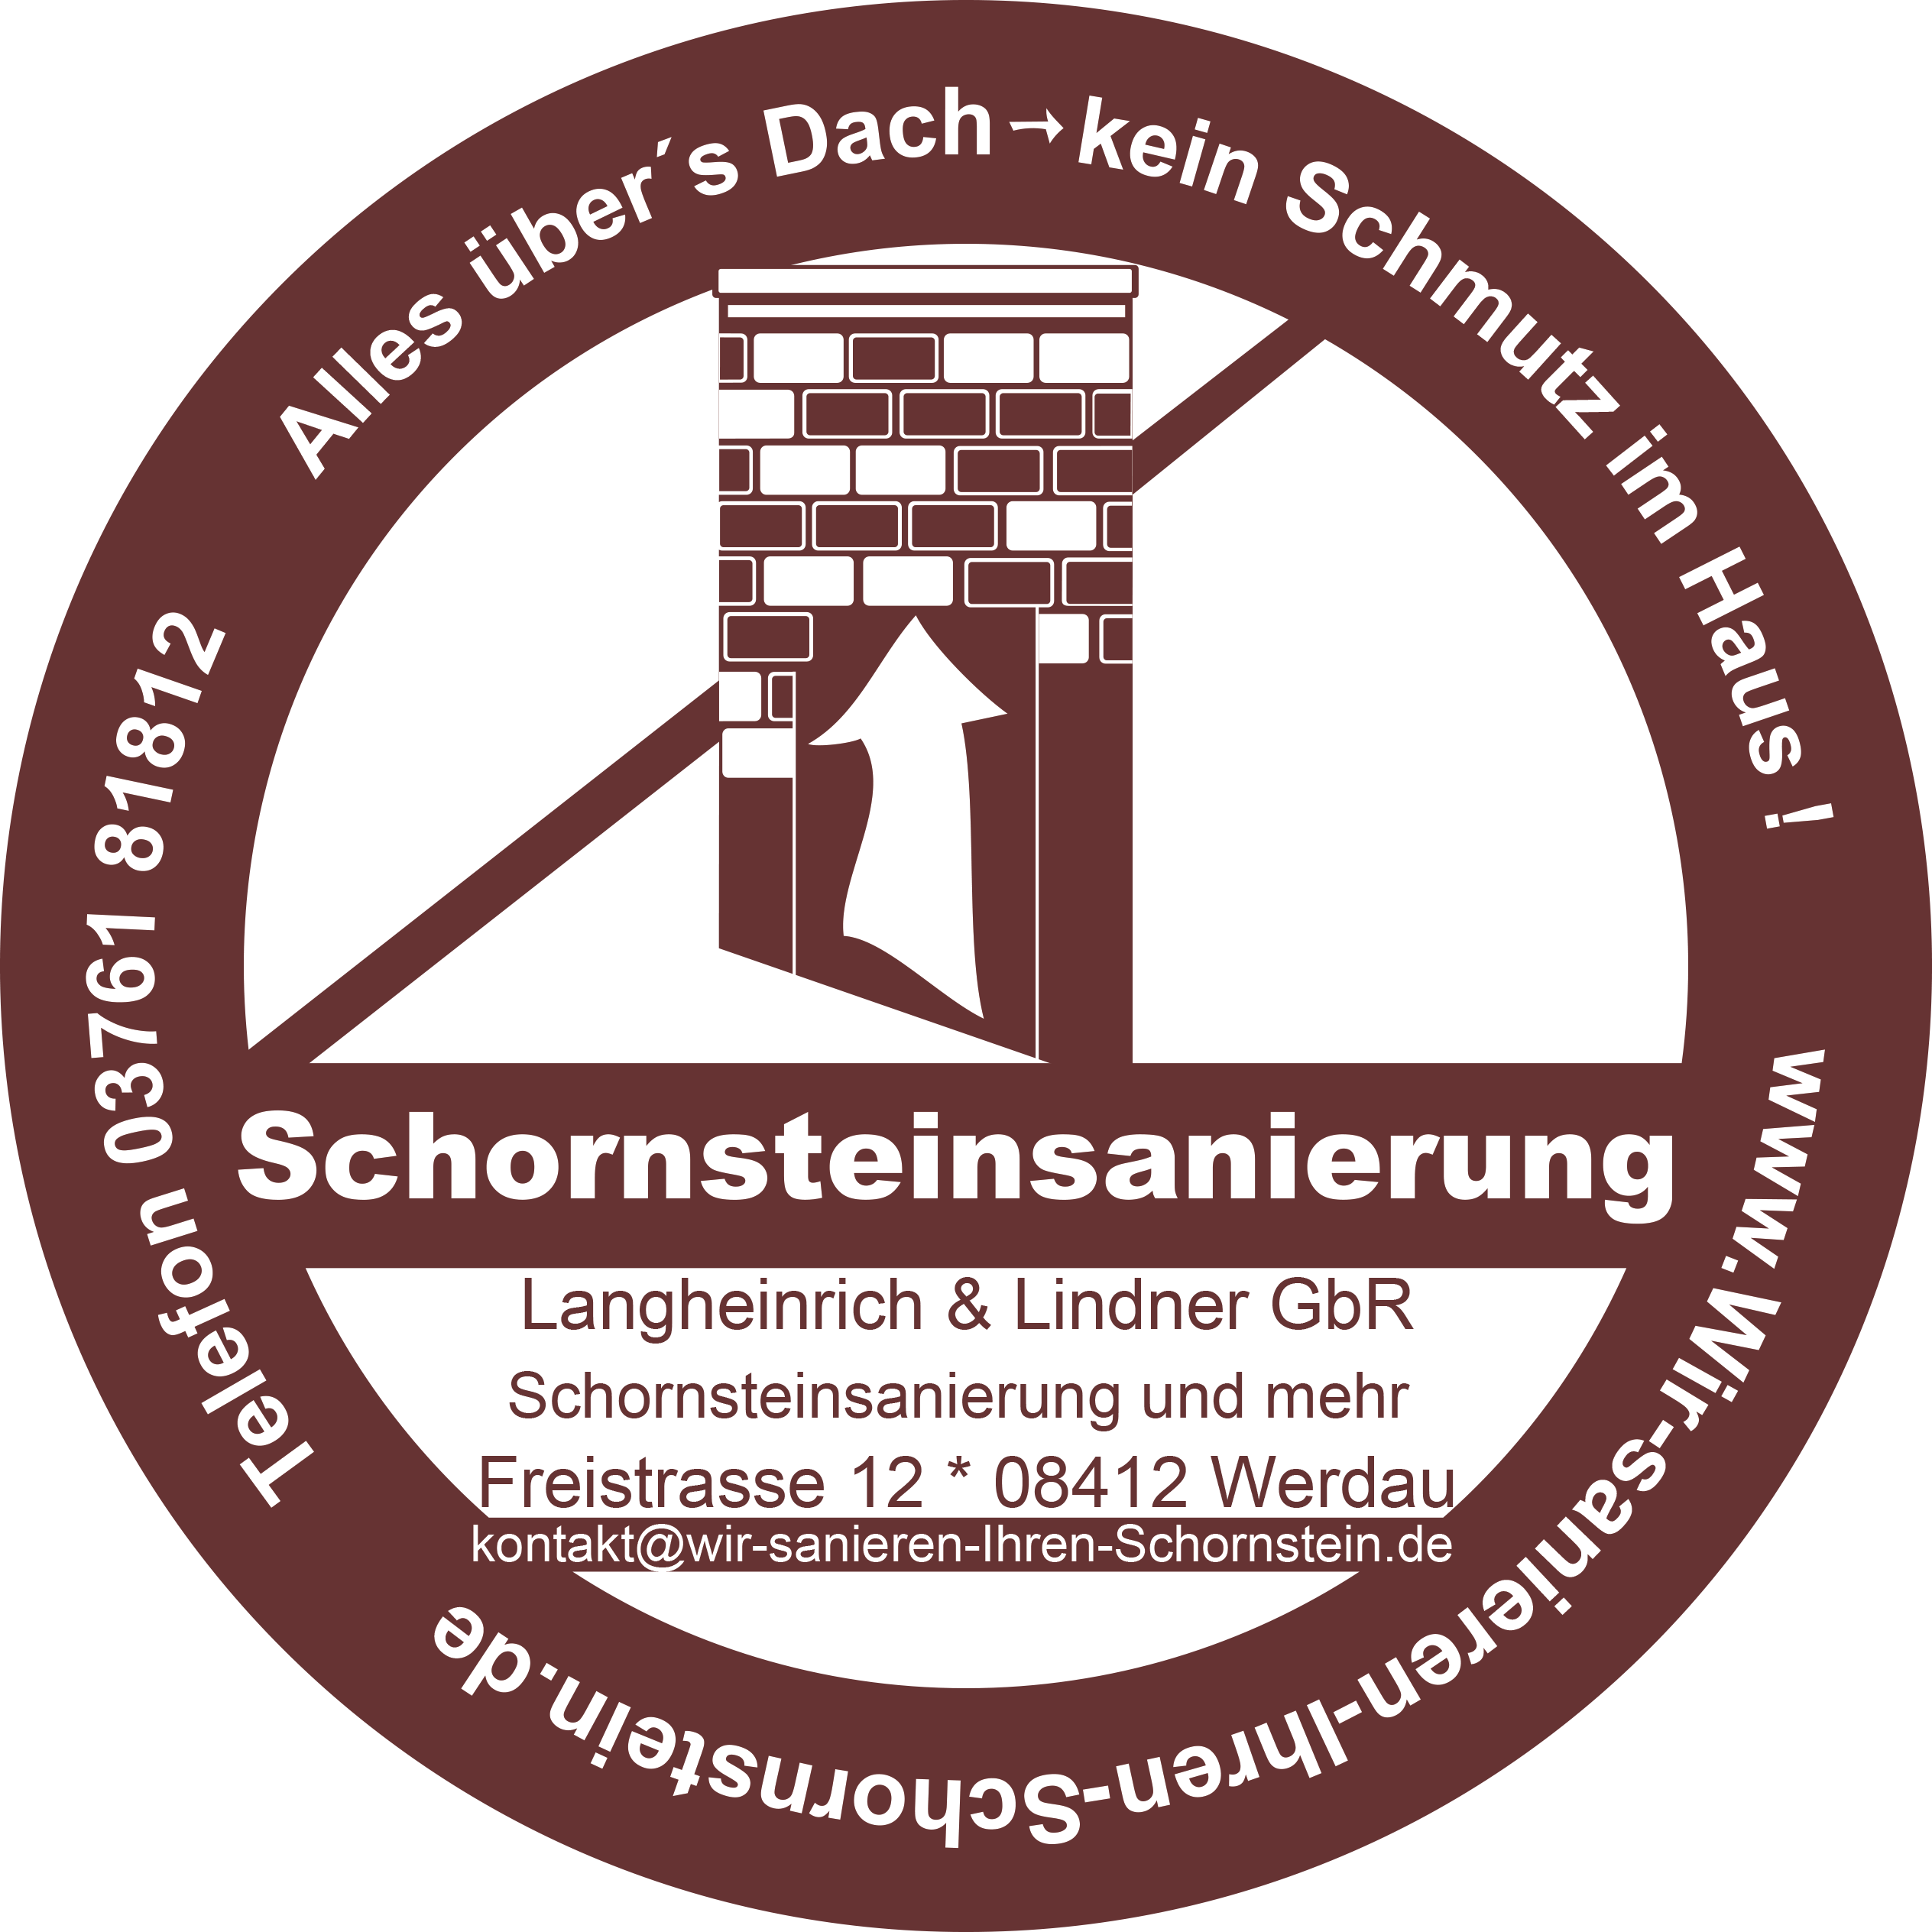 Schornsteinsanierung Langheinrich & Lindner GbR